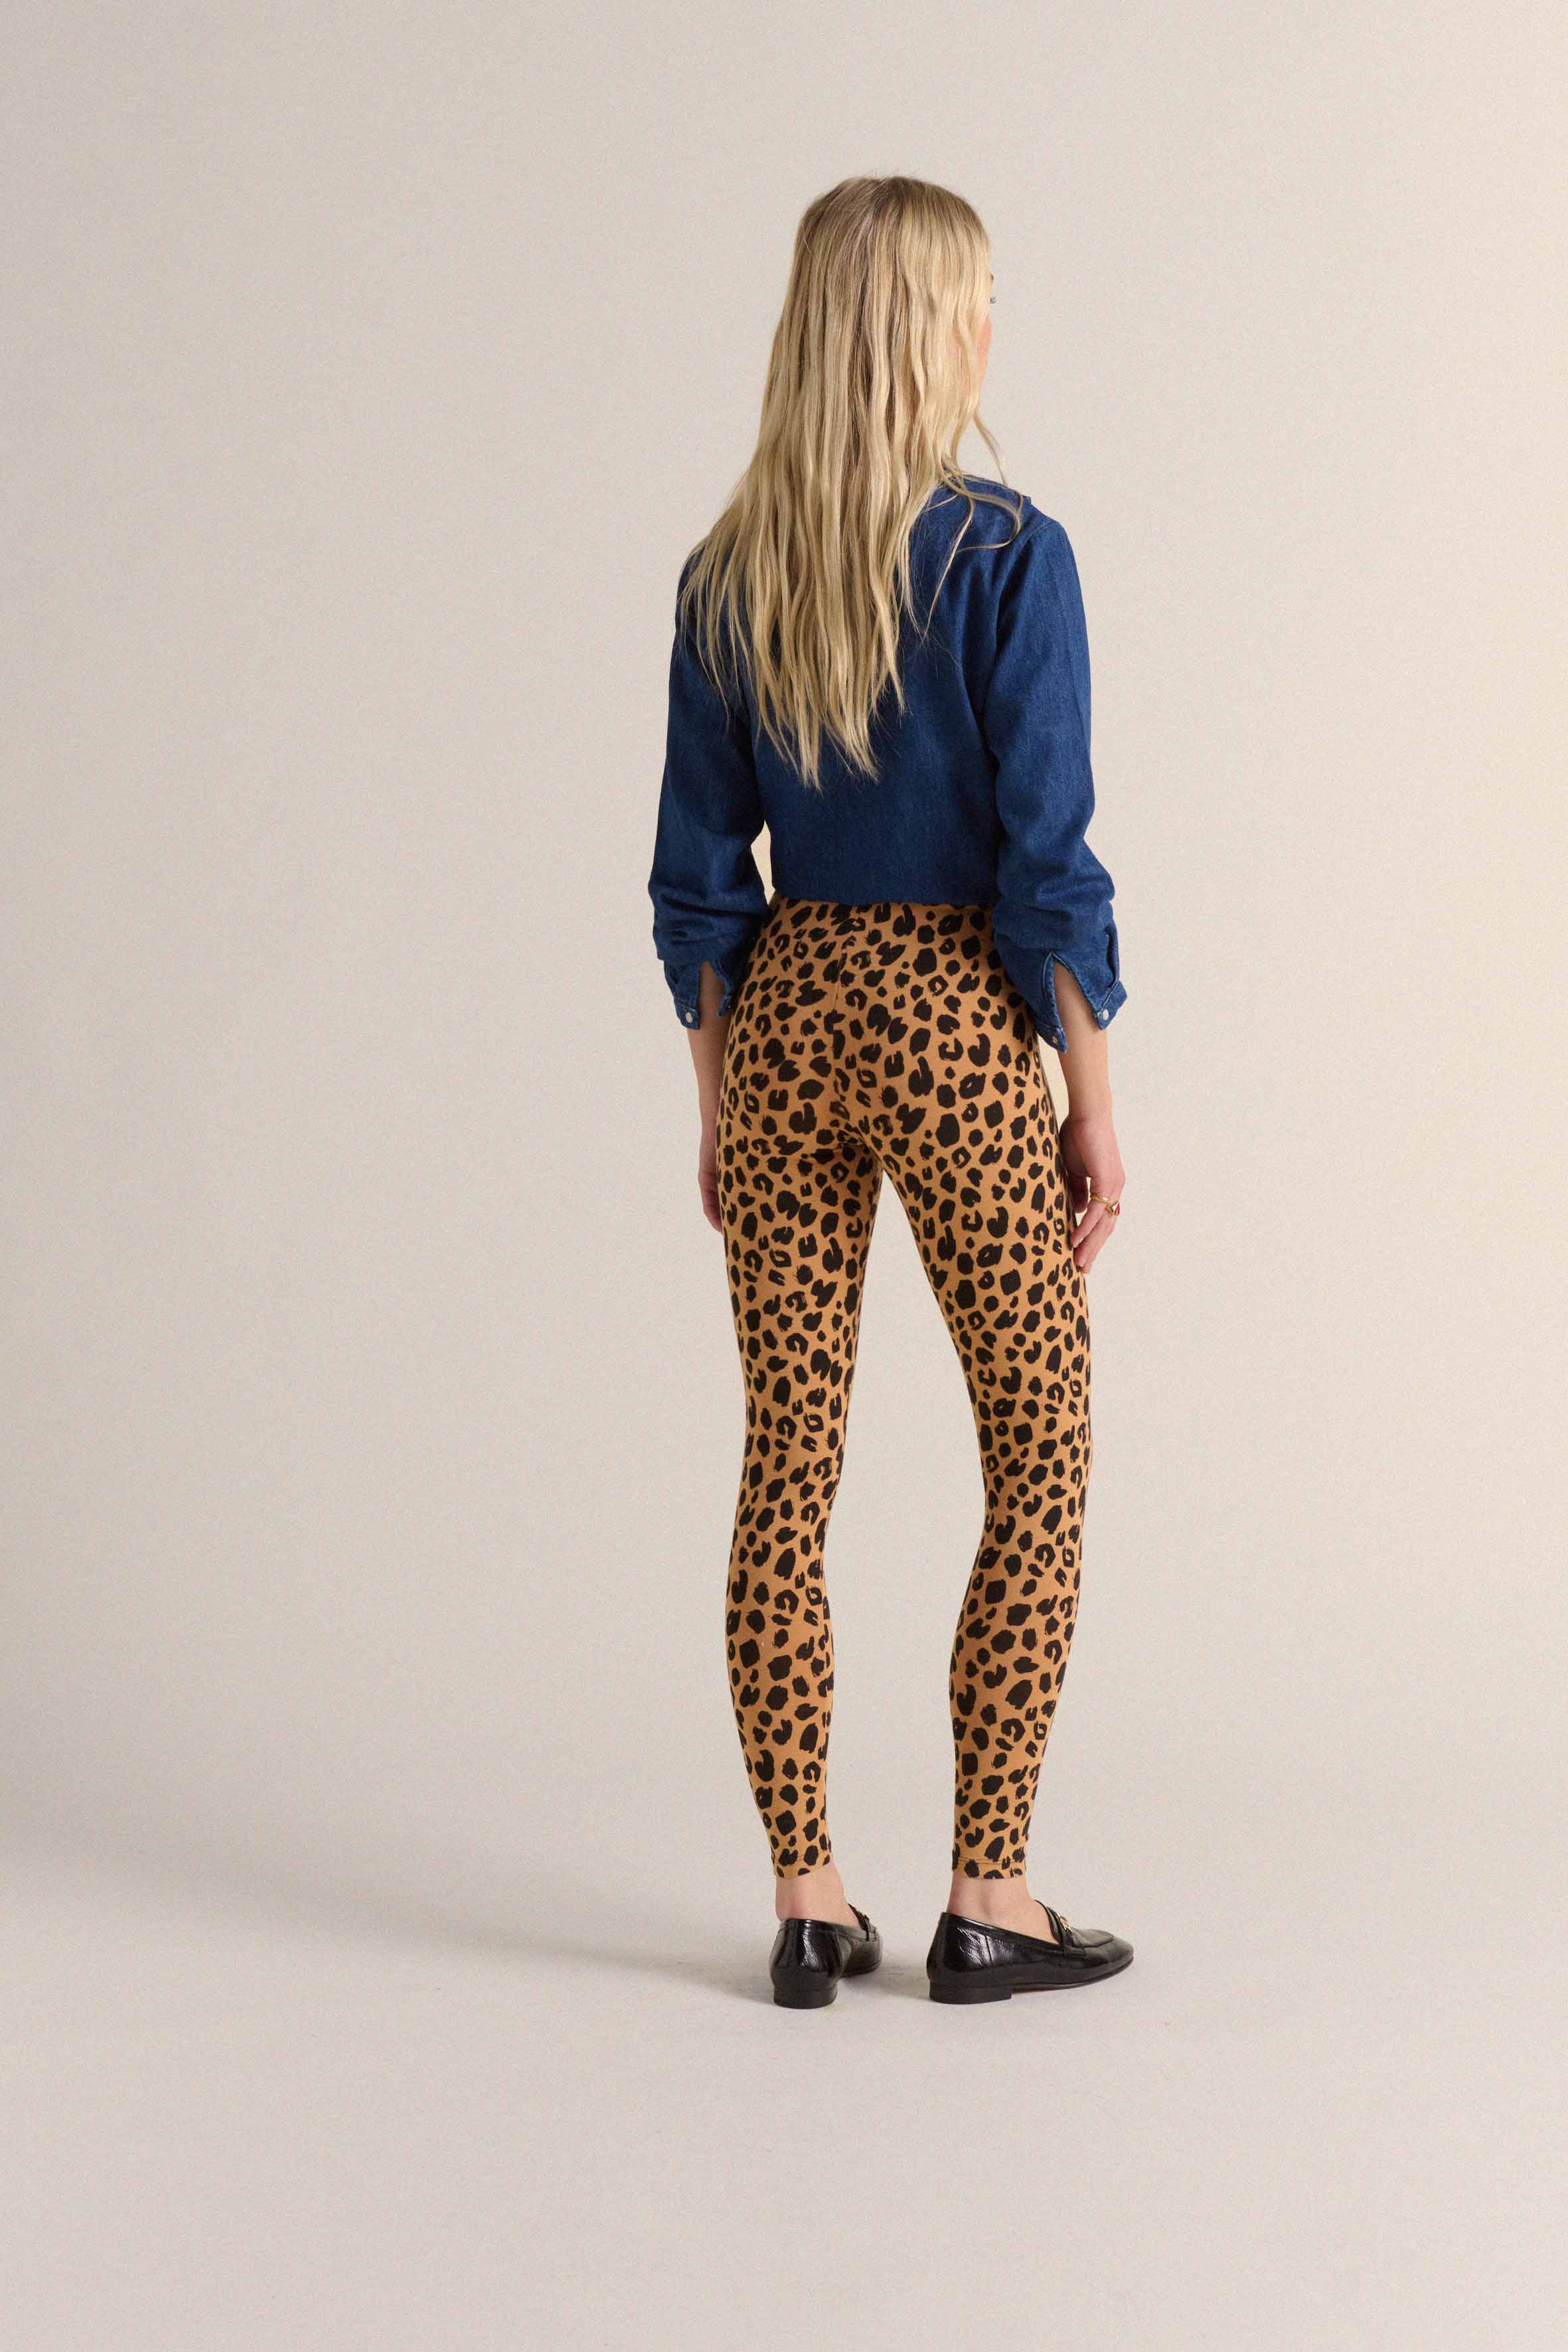 Calm leopard leggings